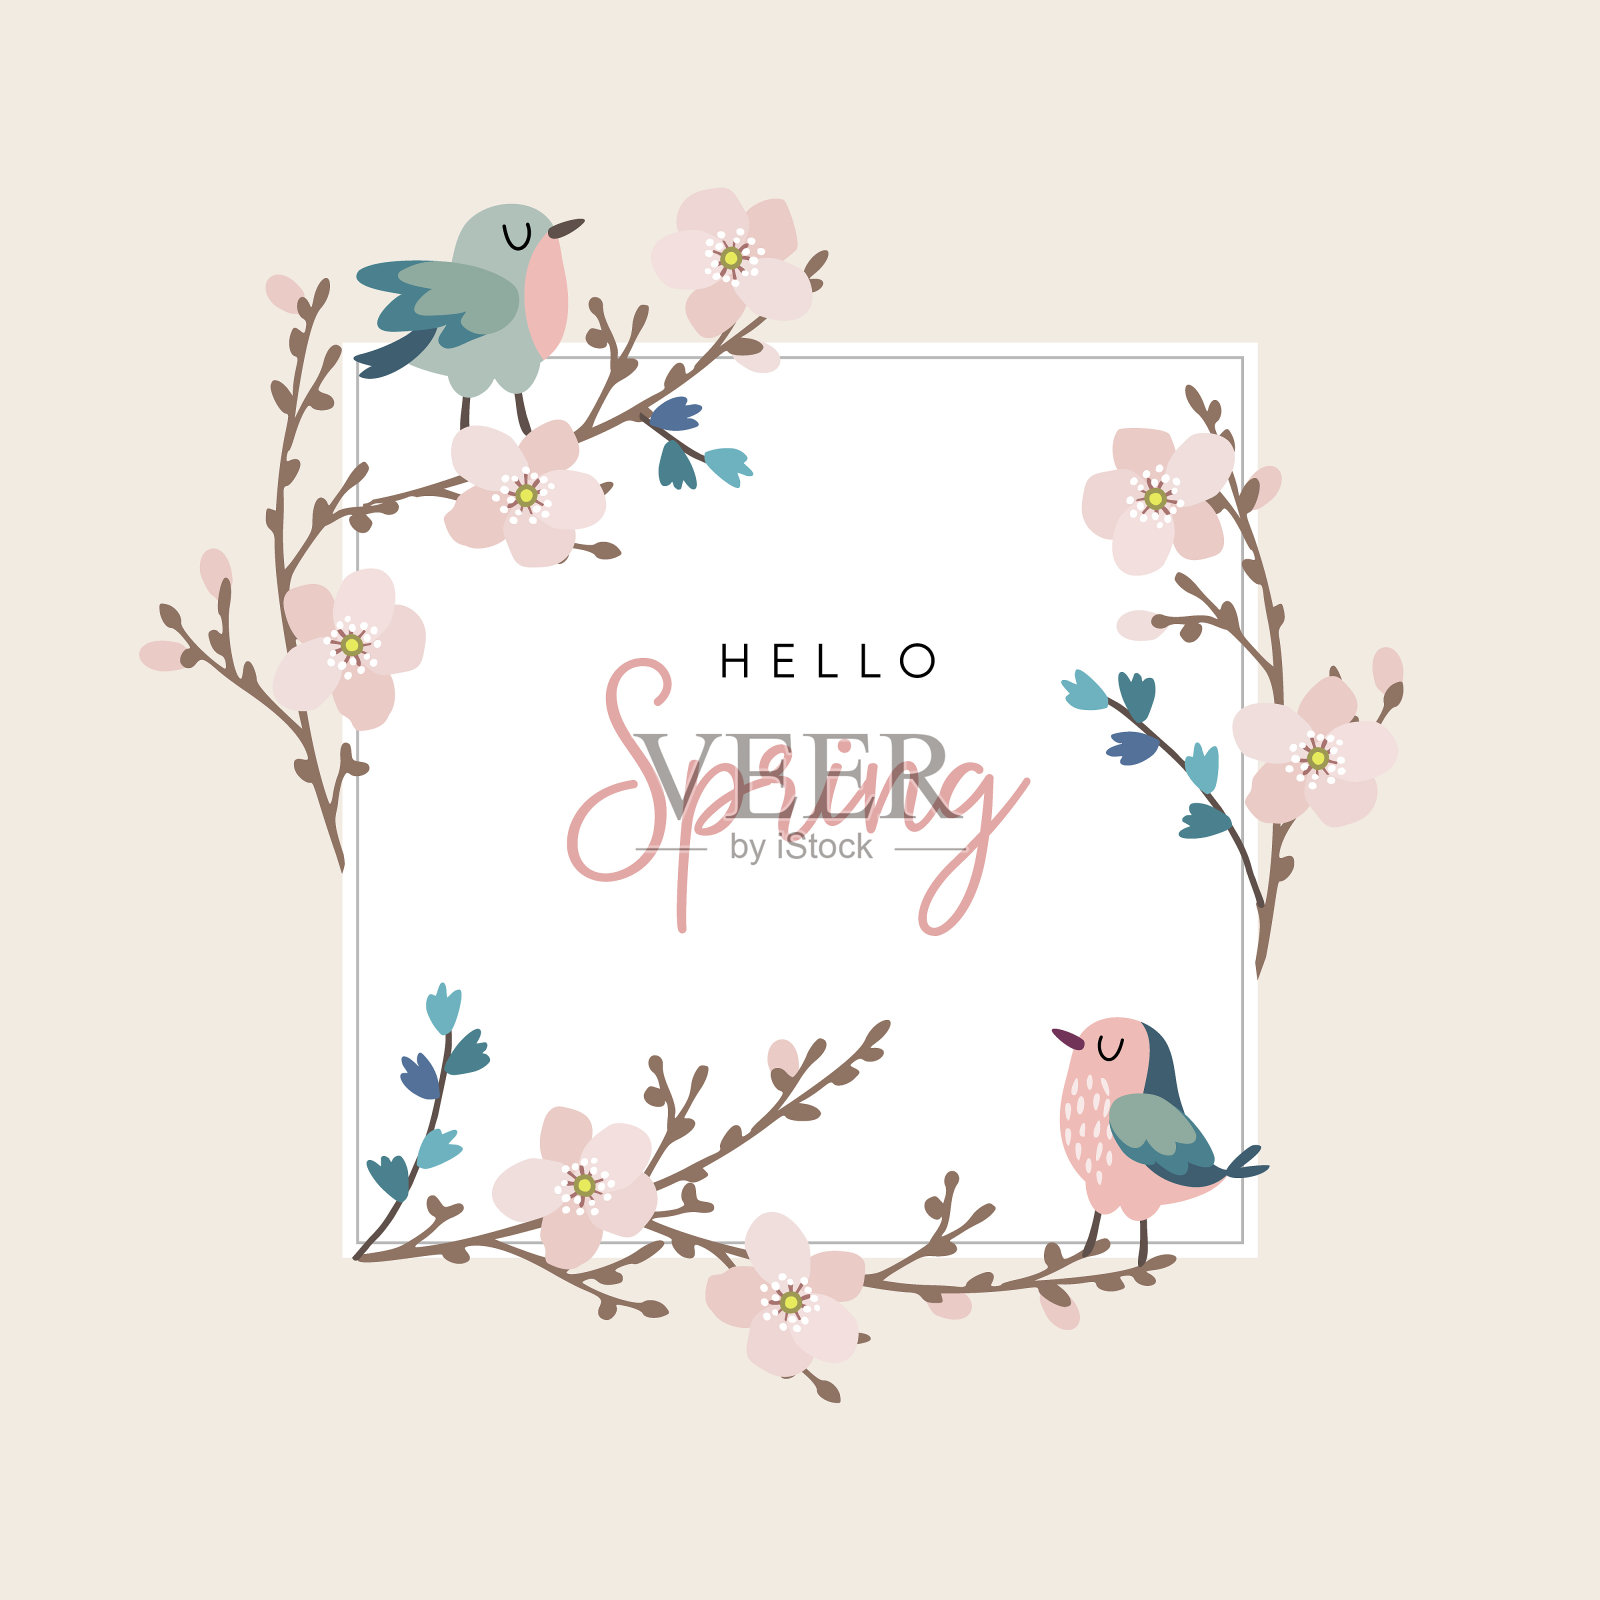 你好春天贺卡，邀请可爱的手绘小鸟和樱桃树枝与粉红色的花朵。复活节的概念。背景矢量图设计模板素材